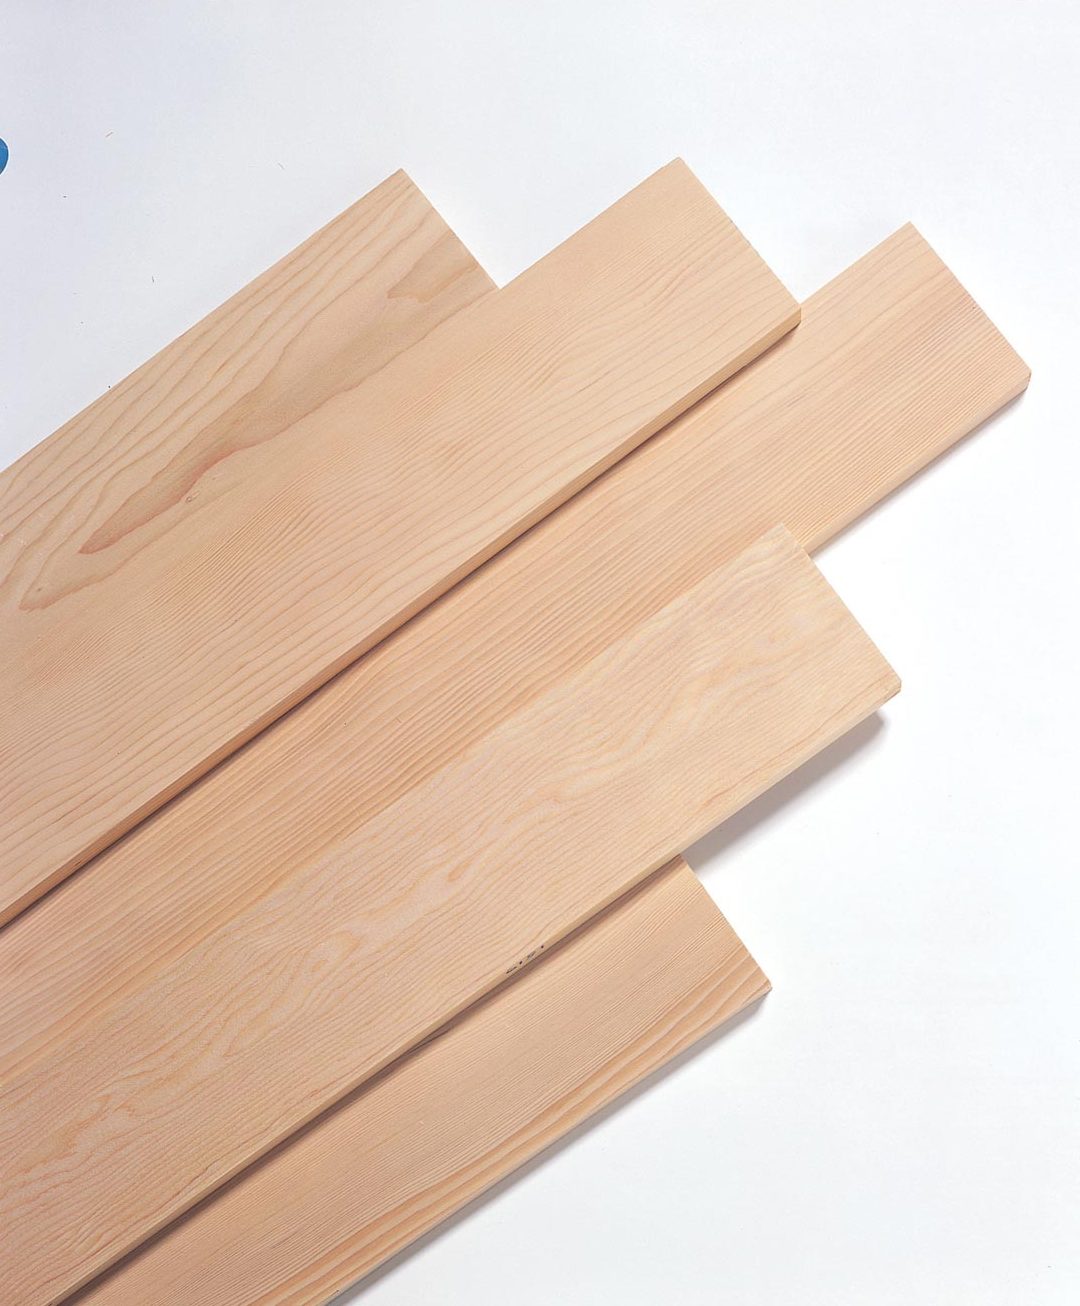 Canadian Wood – Cầu nối đưa gỗ mềm Canada đến tay nhà sản xuất Việt - 7